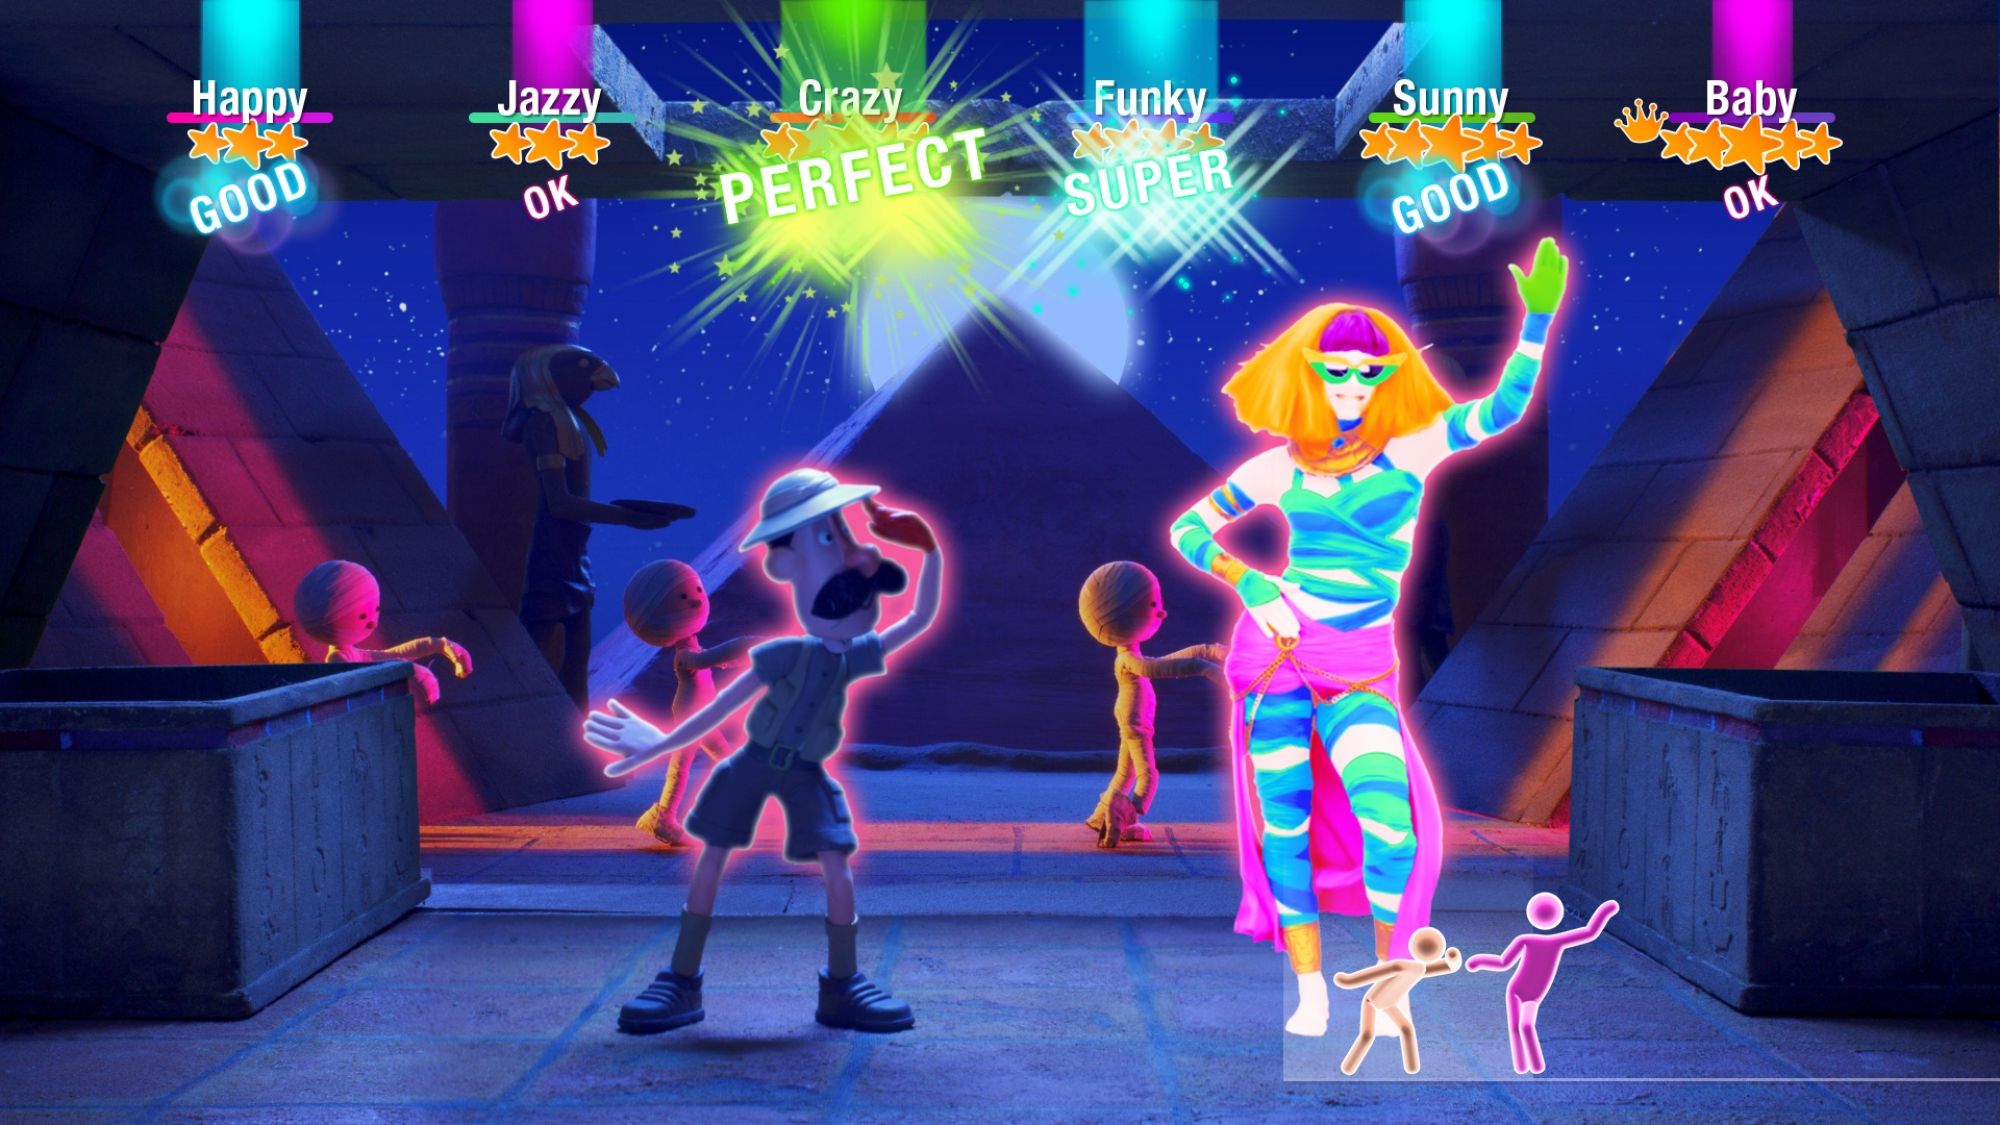 Студия Sony намерена поставить экранизацию игры Just Dance